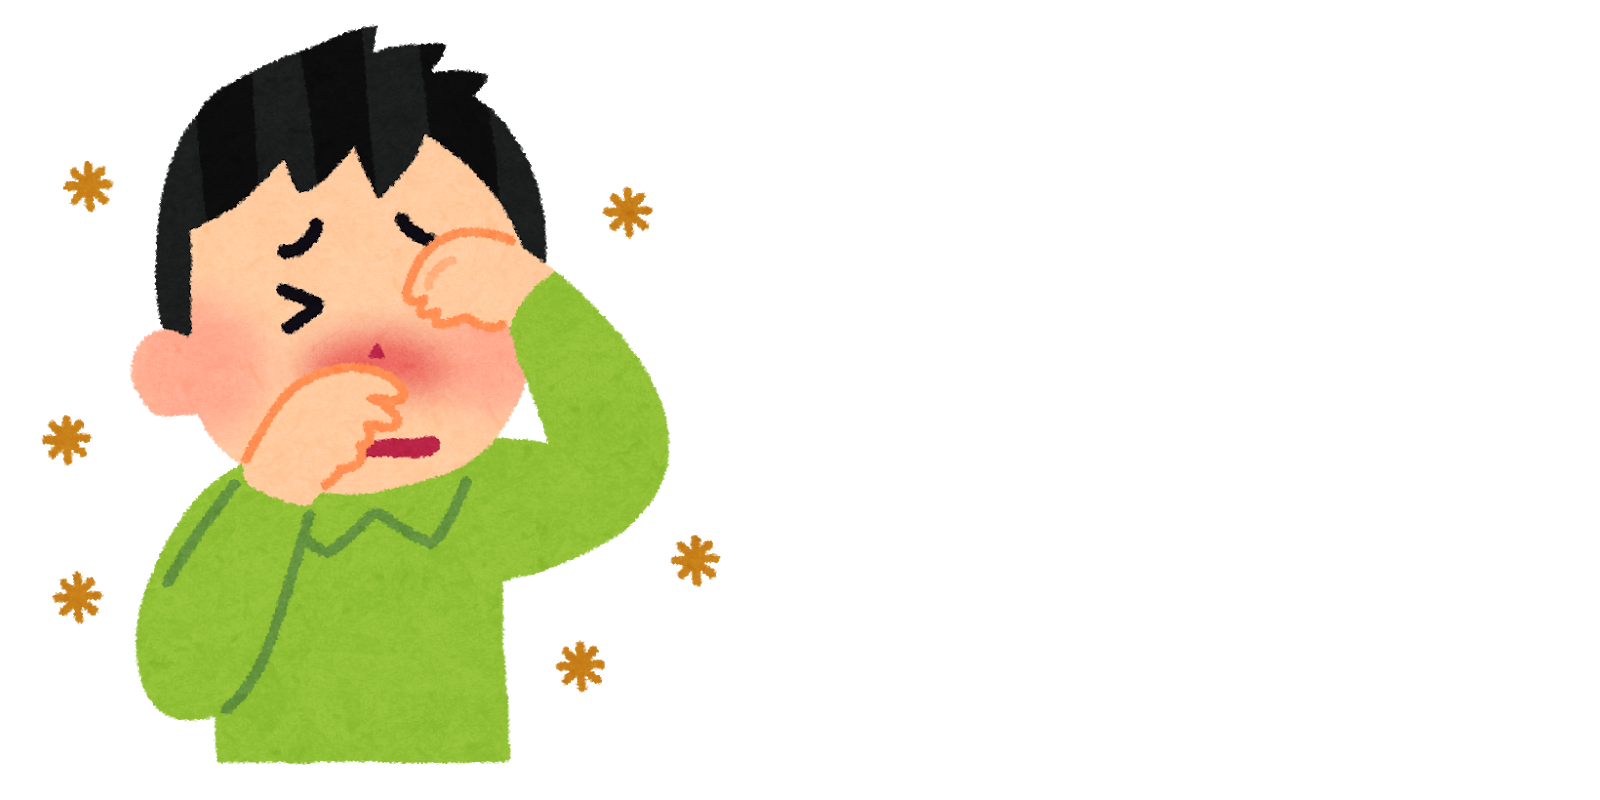 アレルギー性鼻炎の診断